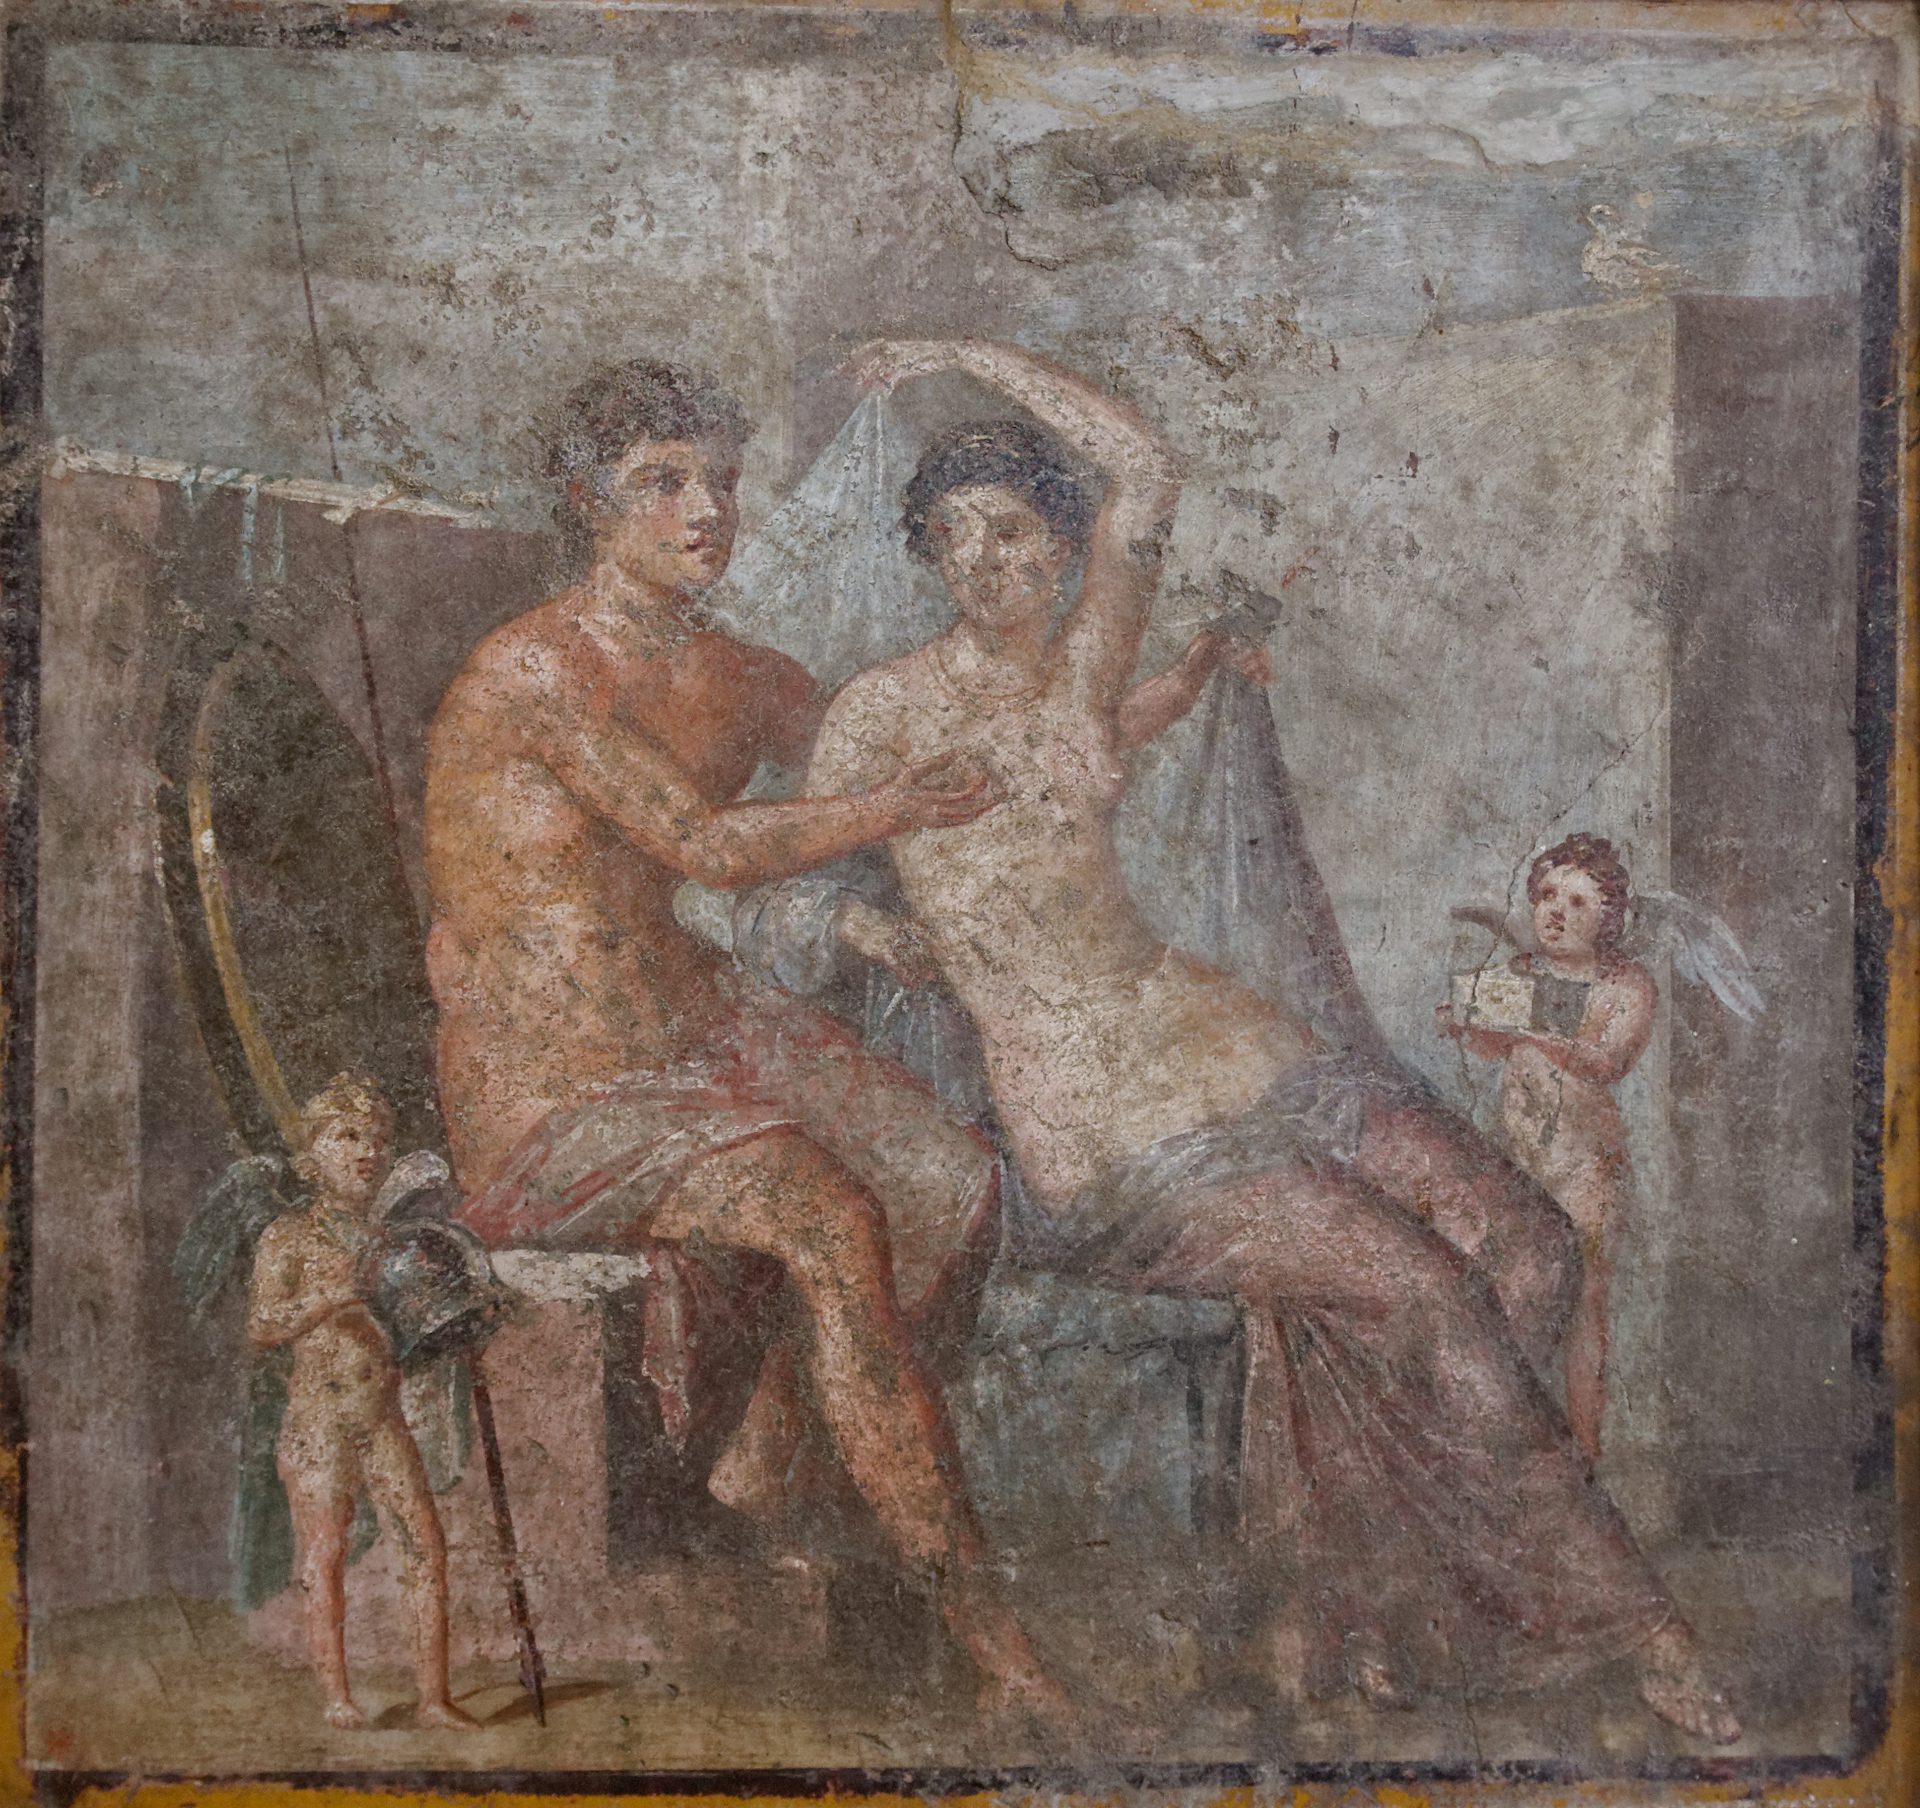 Ares and Aphrodite fresco at Pompeii